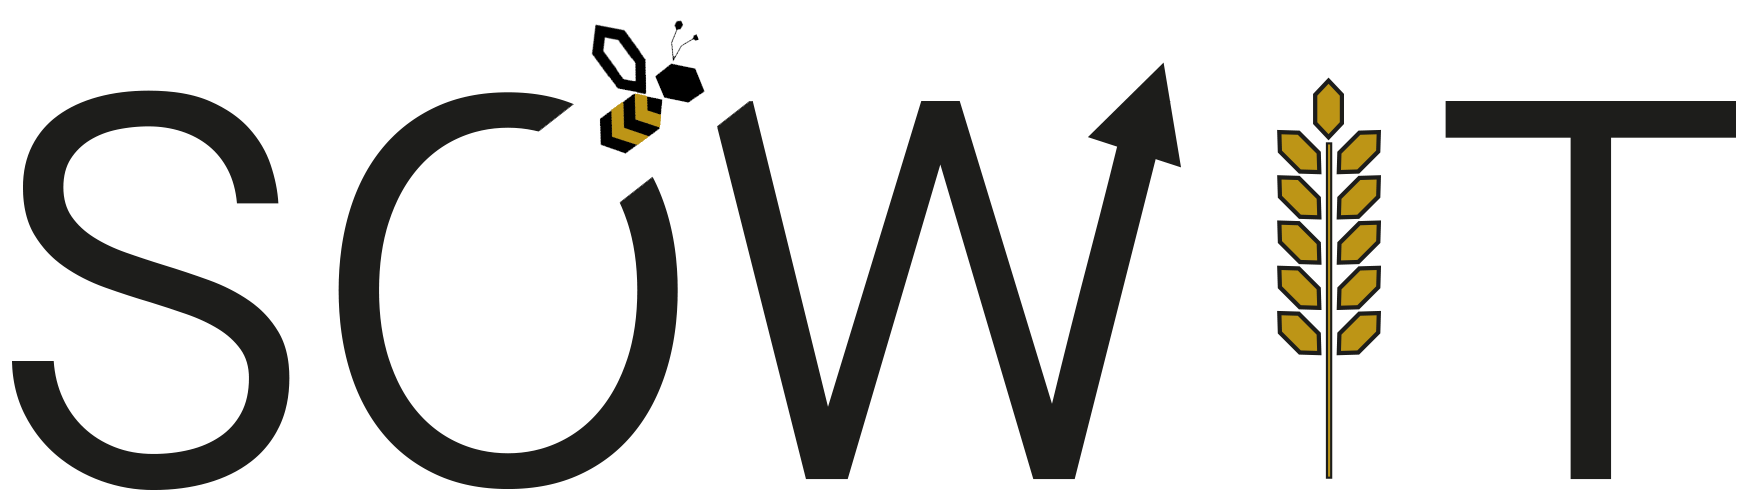 logo sowit